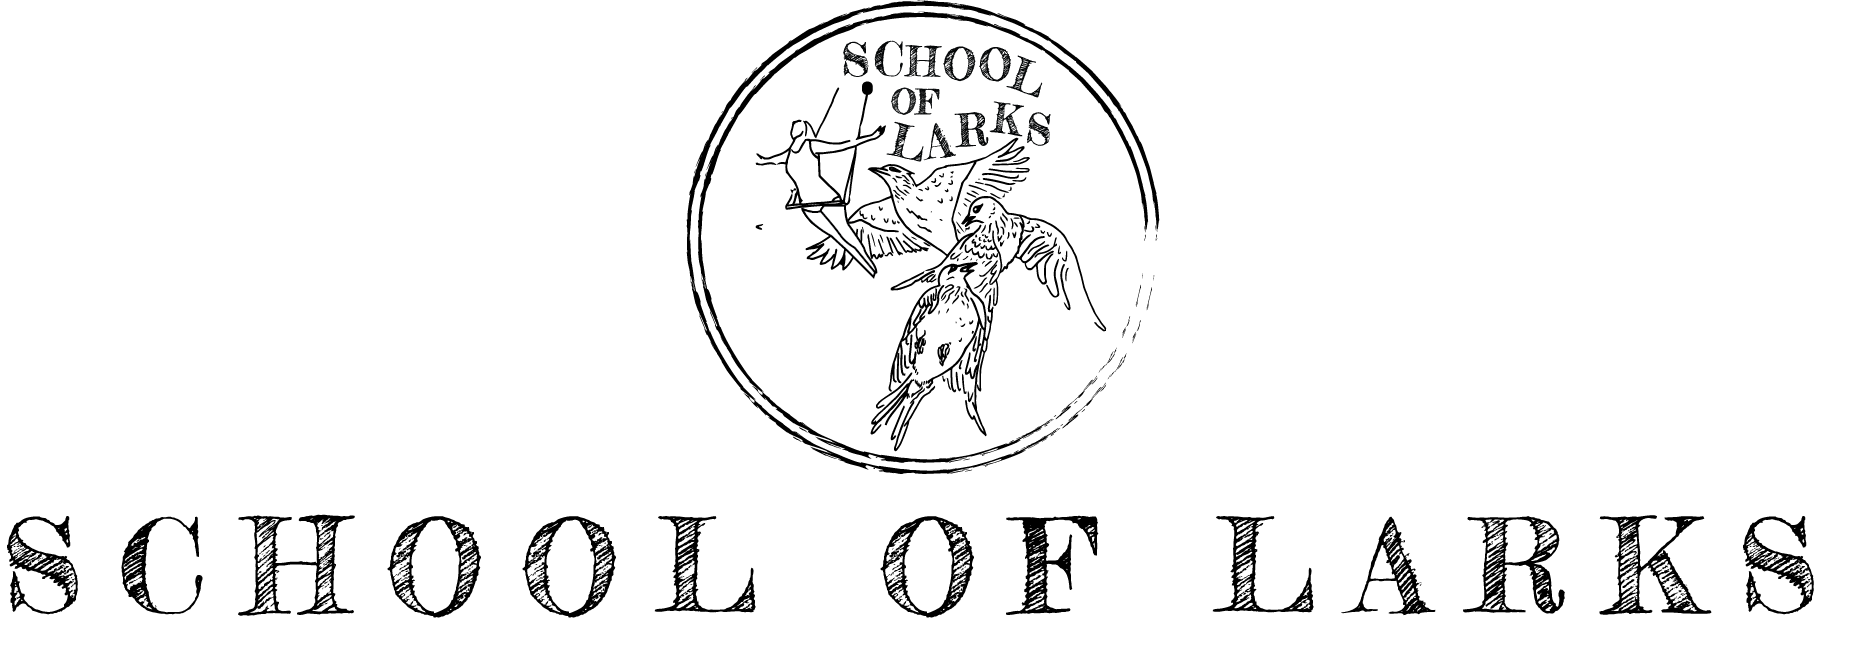 School larks long logo